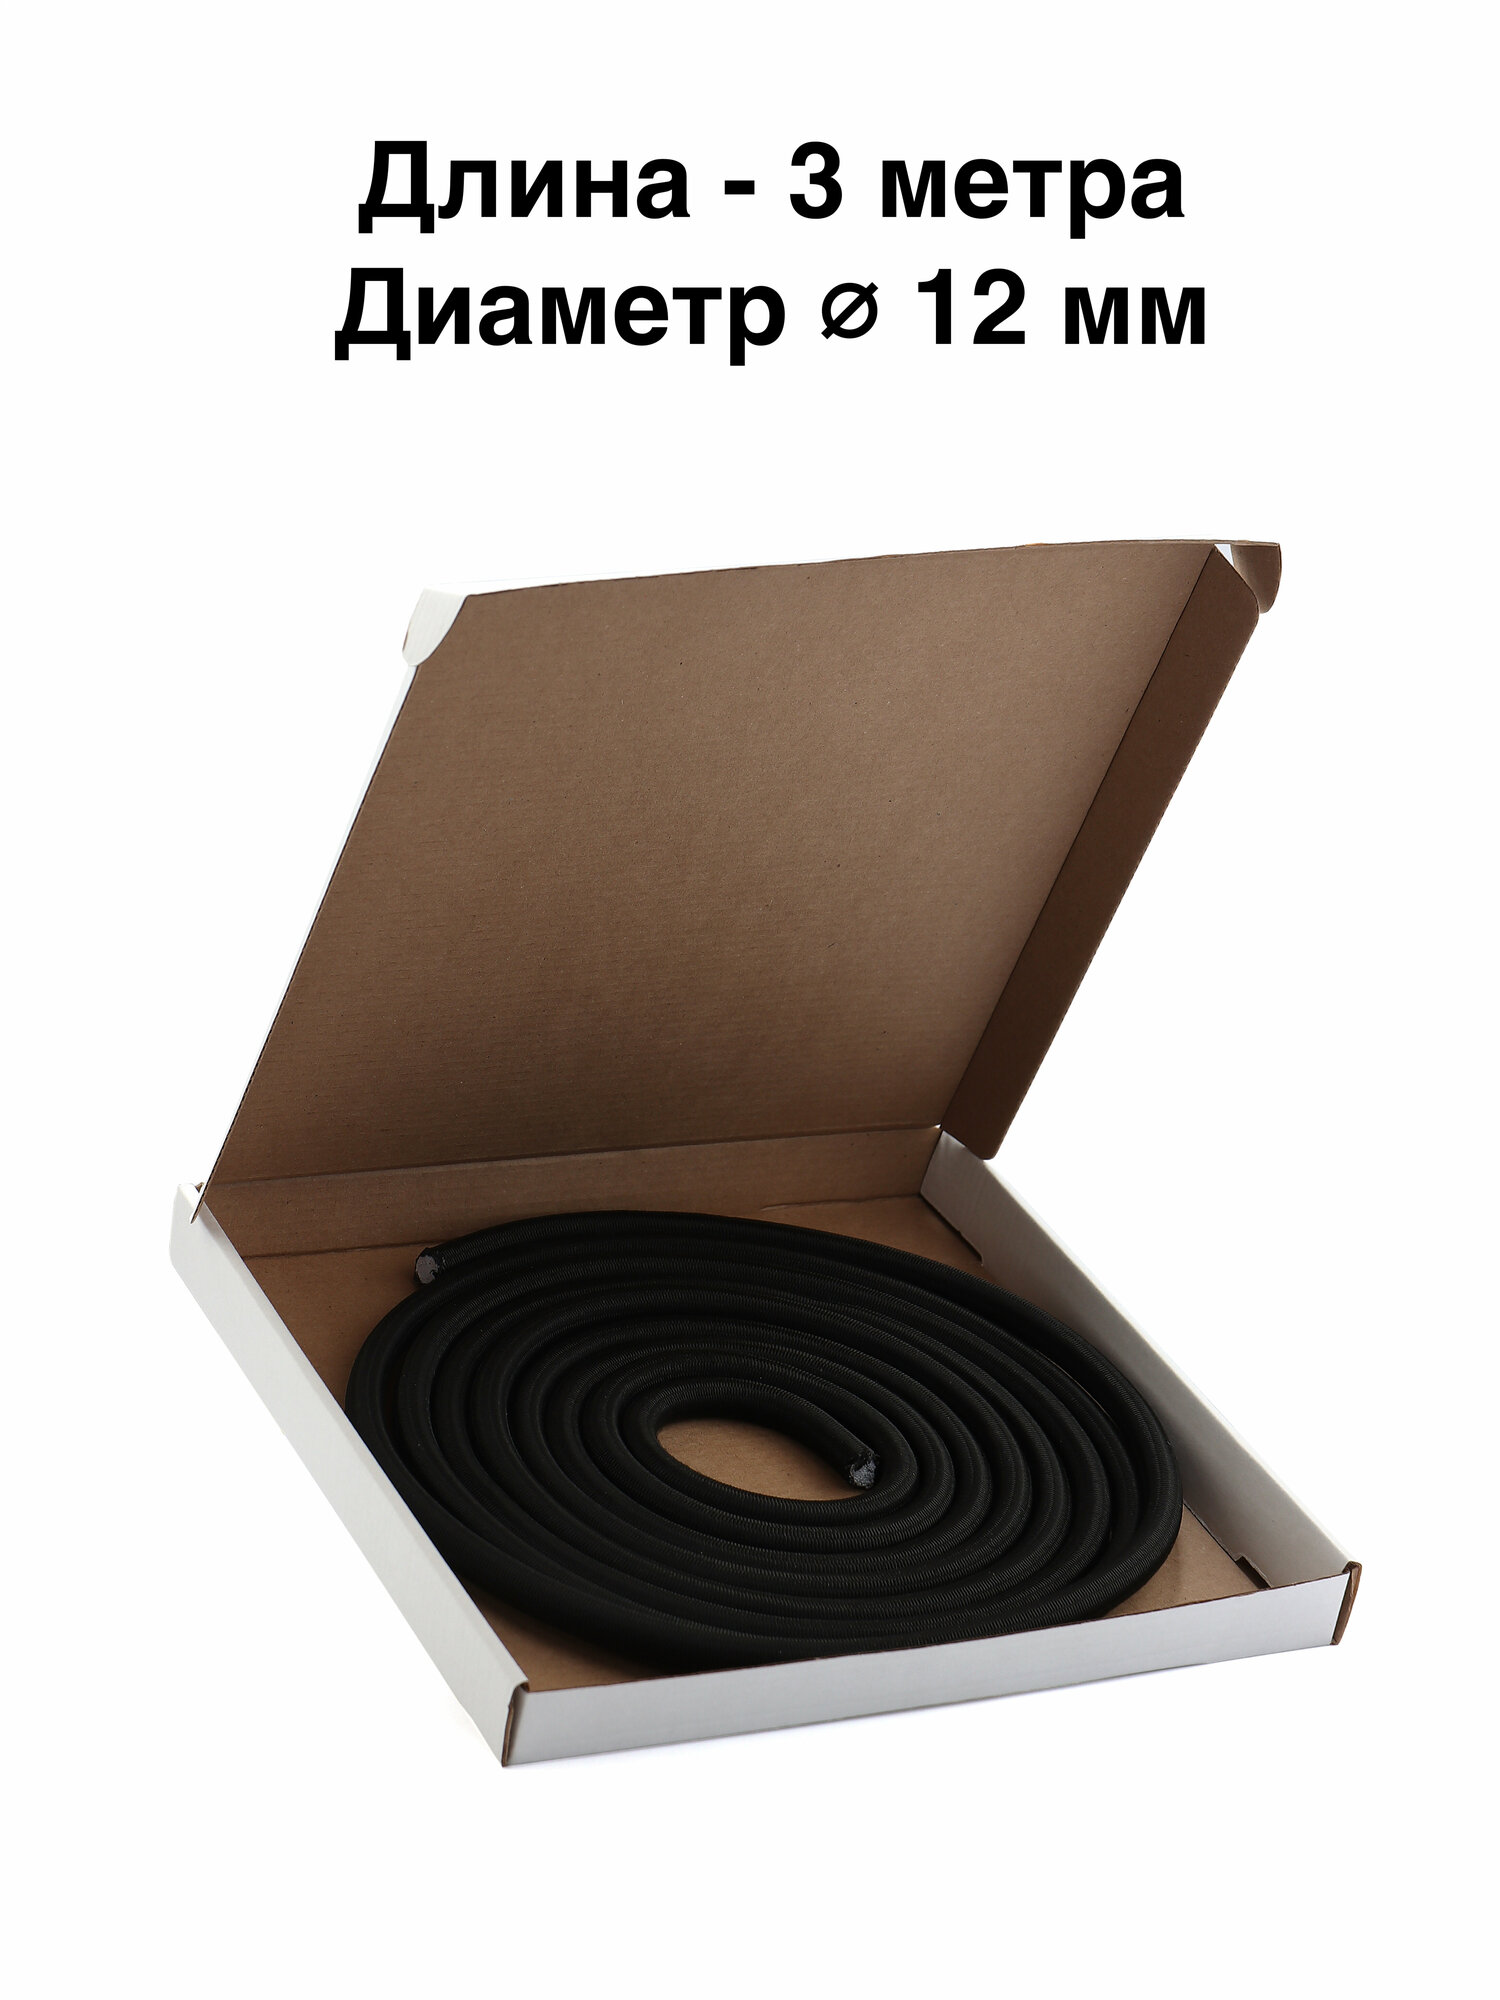 Шнур эспандерный борцовская резина, черный 3 метра, диаметр 12 мм